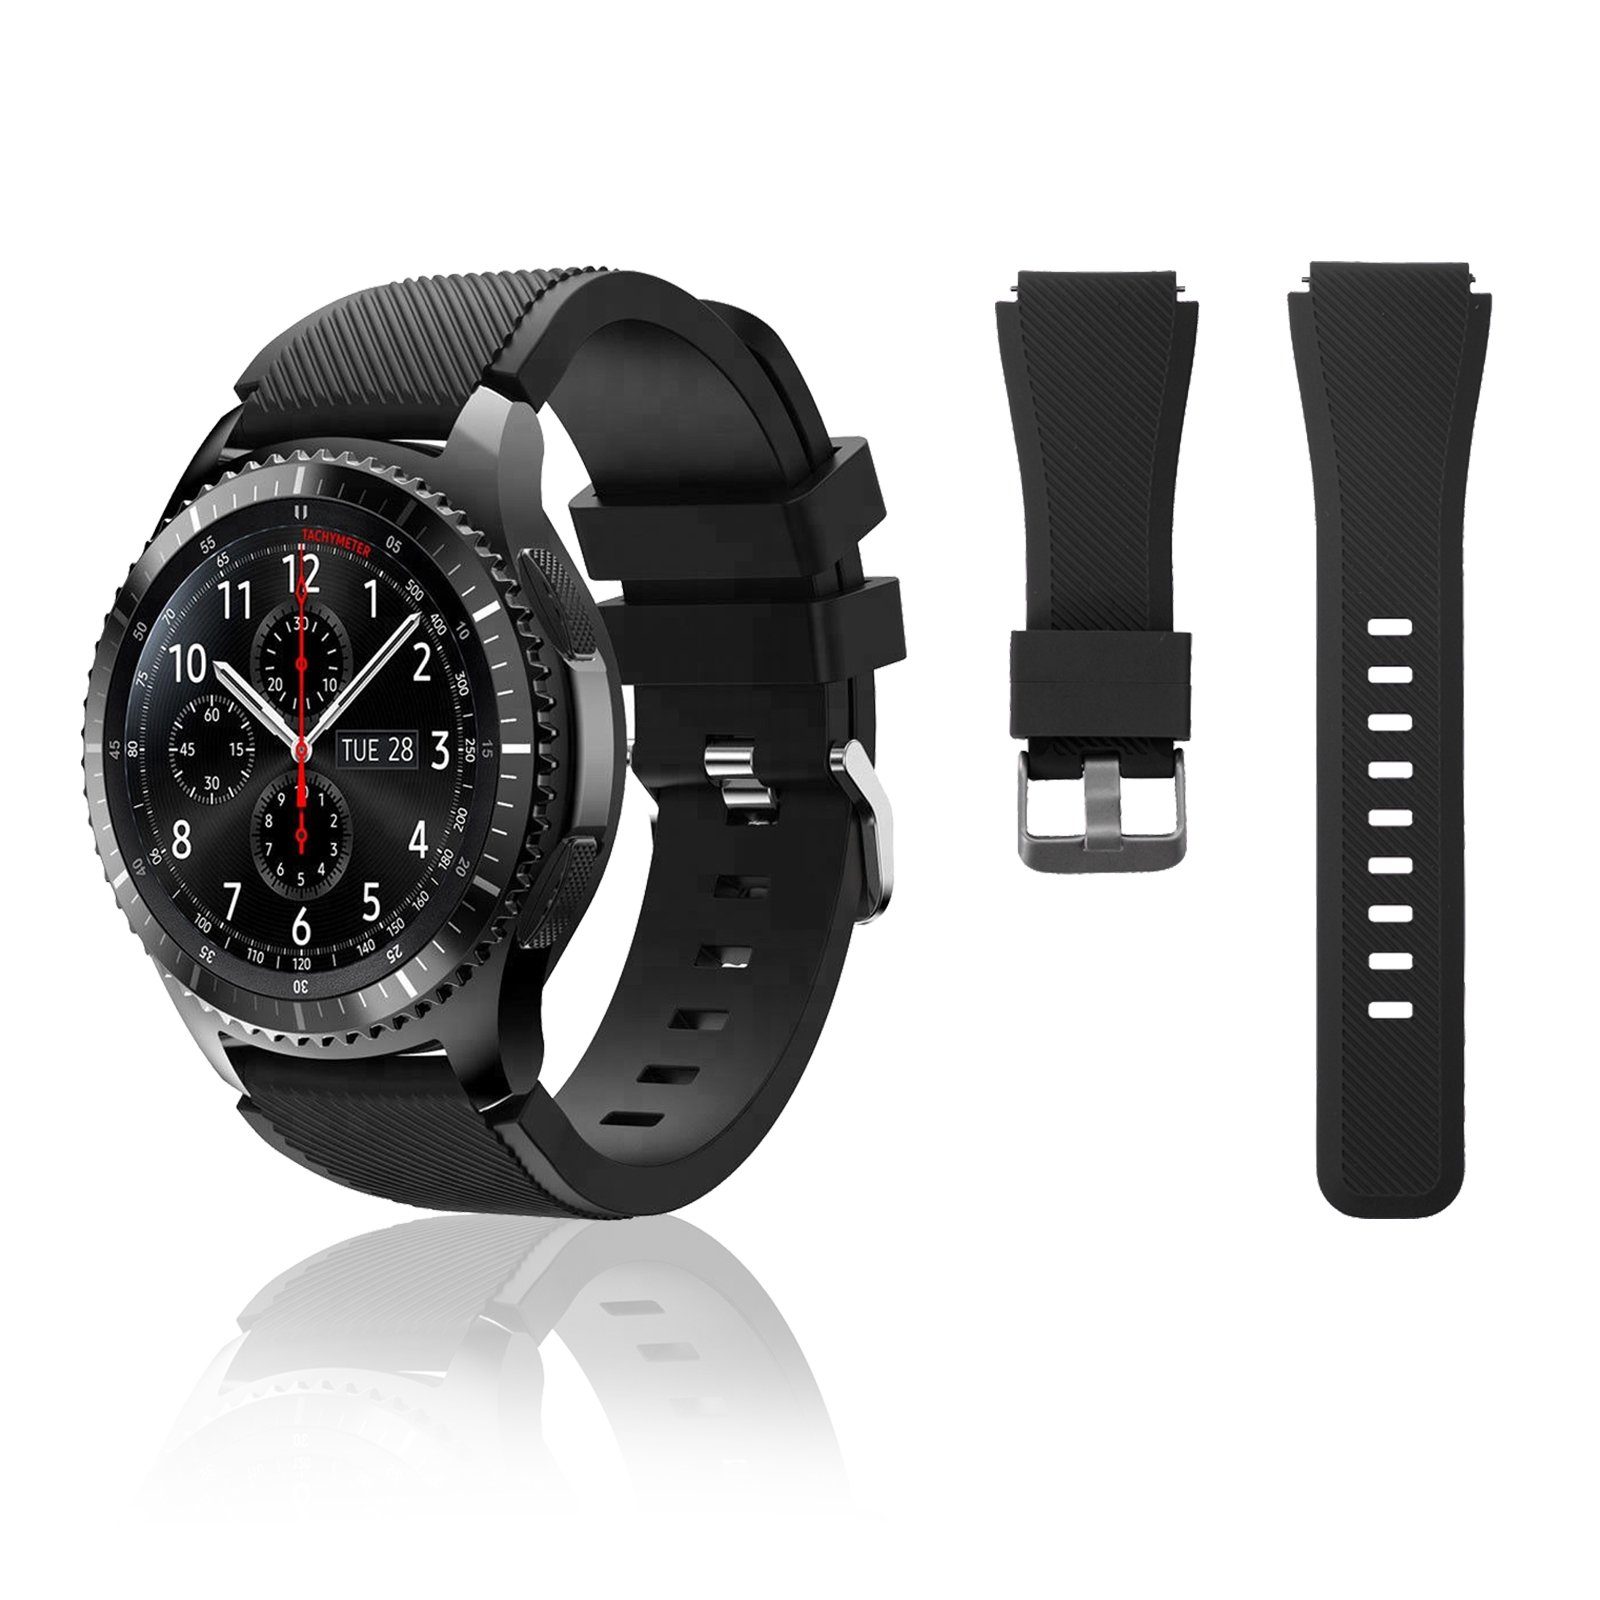 für S3, gear 46mm, R840, schwarz Diida watch Twill, Smartwatch-Armband Silikon, Uhrenarmband,Watch Galaxy Band,Armband,Uhrenarmbänder, watch3 45mm Galaxy